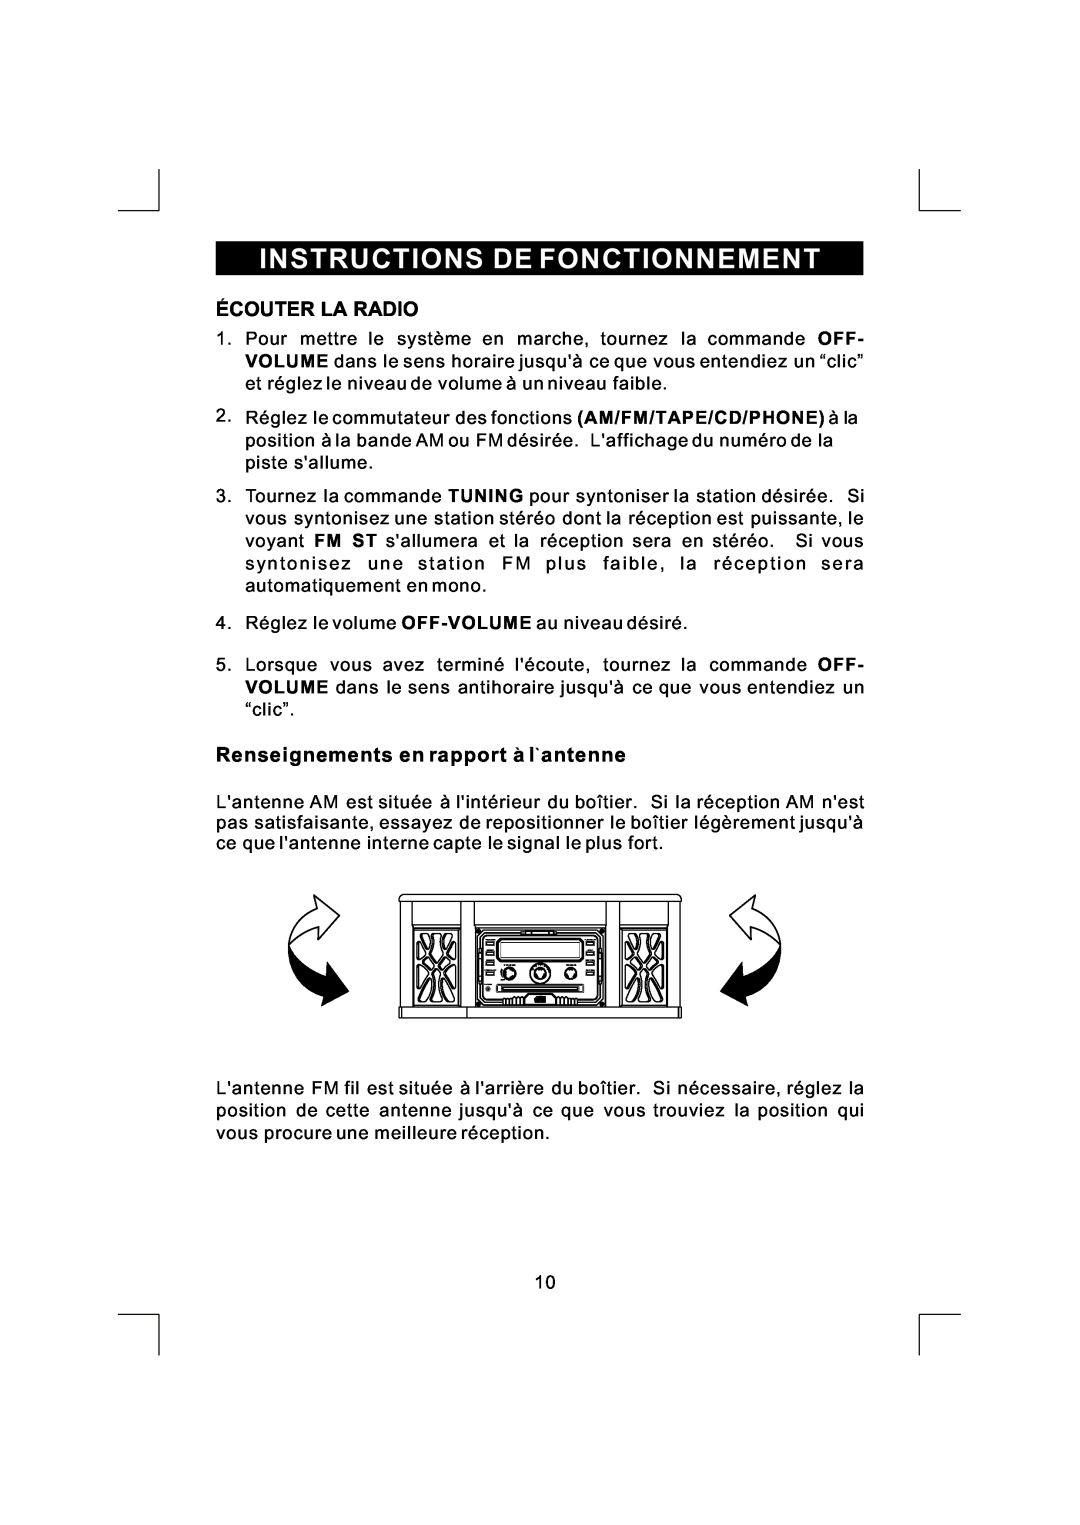 Emerson NR290TTC owner manual Instructions De Fonctionnement, Ecouter La Radio, Renseignements en rapport a l antenne 